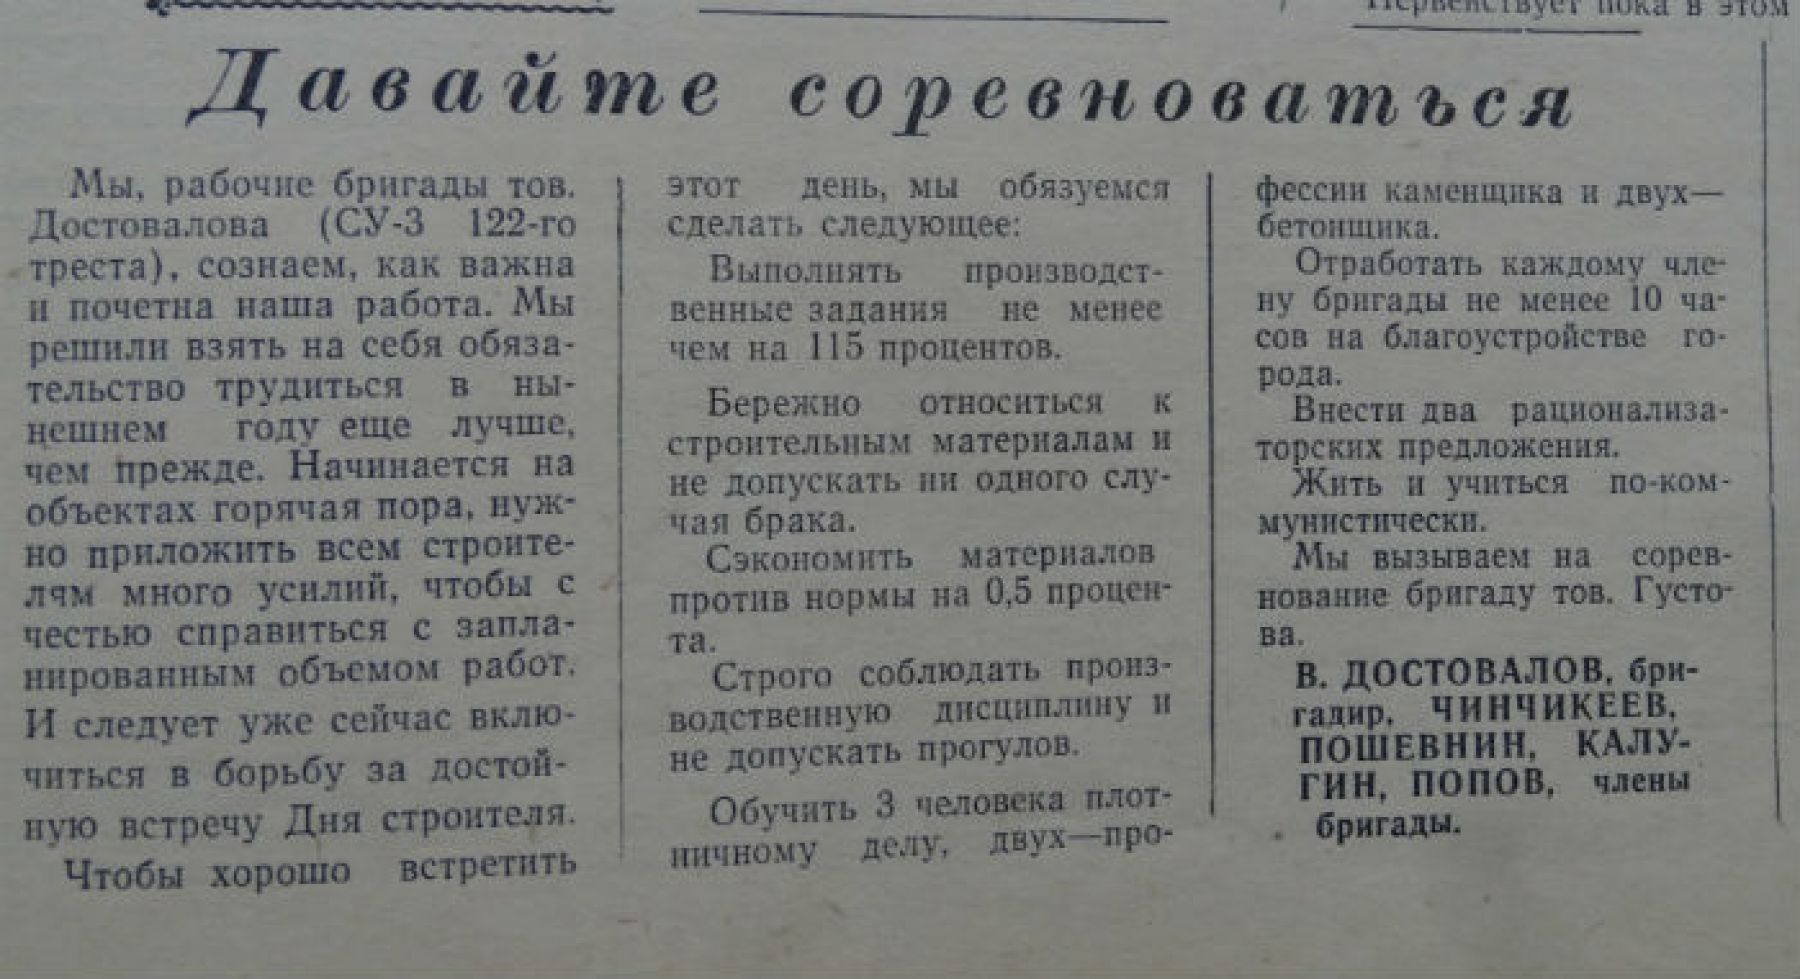 Первая полоса газеты 1960-го года